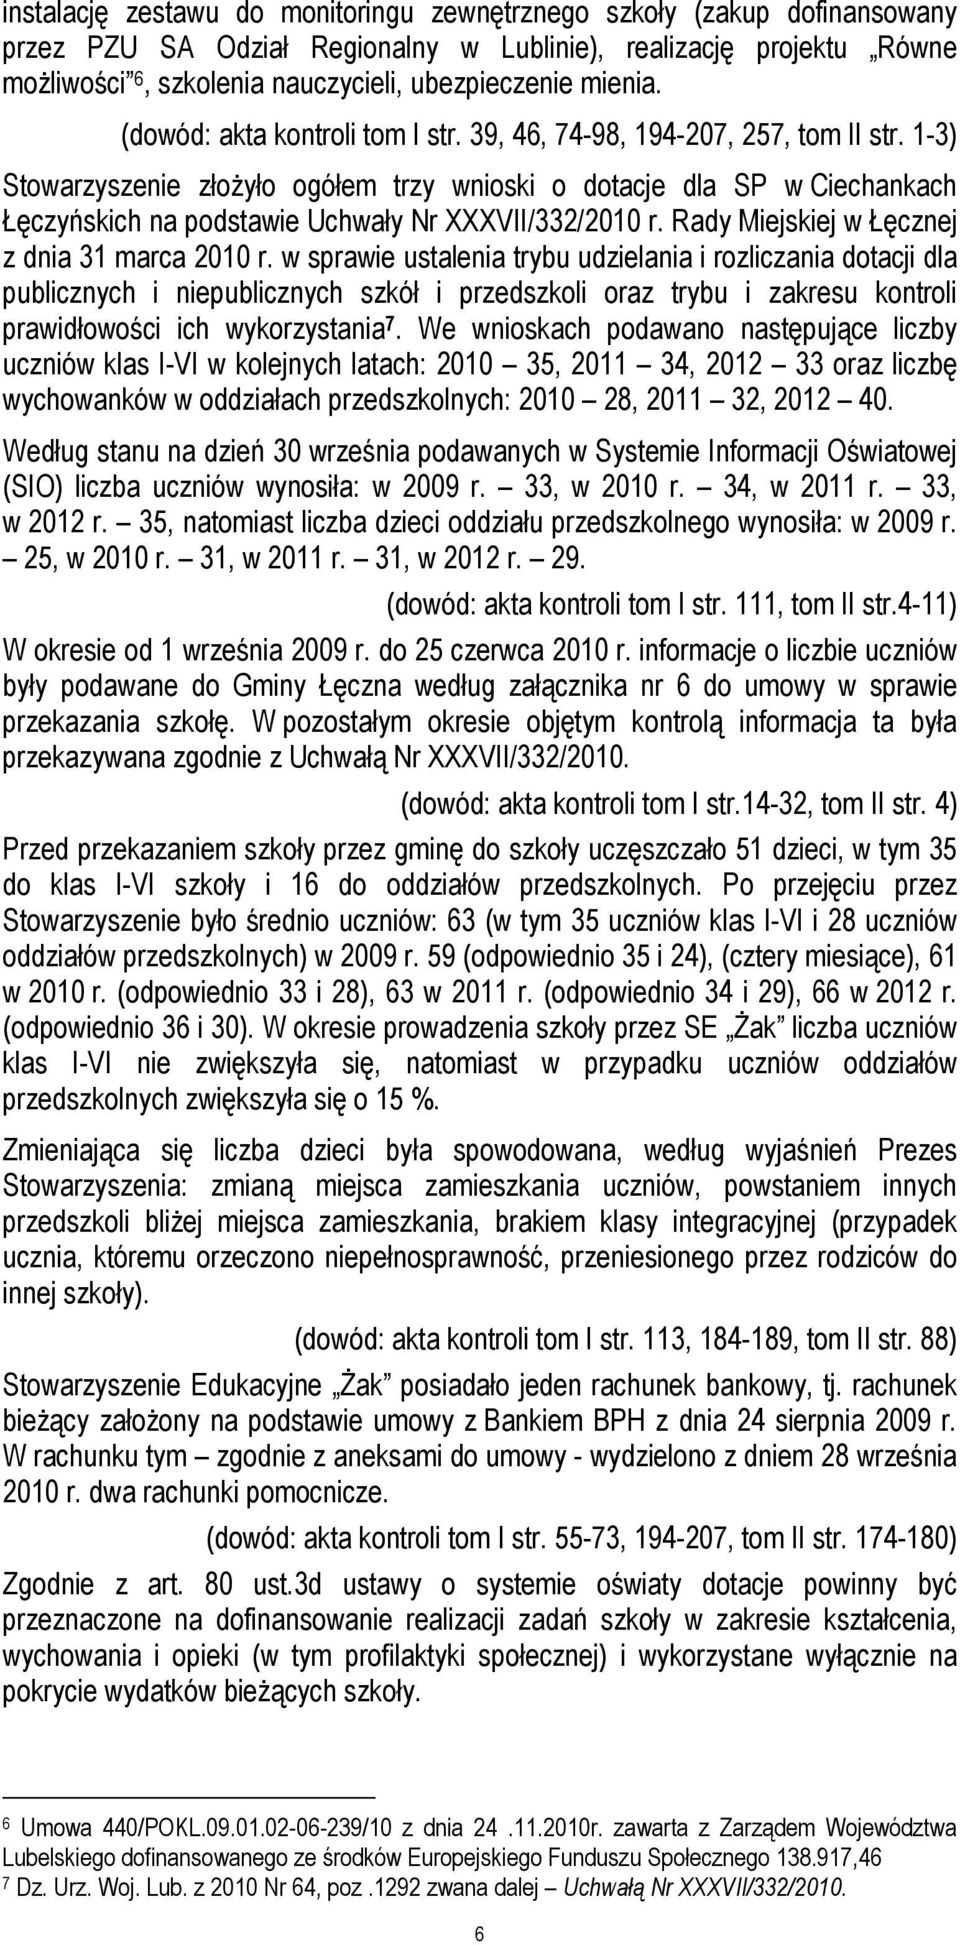 1-3) Stowarzyszenie złożyło ogółem trzy wnioski o dotacje dla SP w Ciechankach Łęczyńskich na podstawie Uchwały Nr XXXVII/332/2010 r. Rady Miejskiej w Łęcznej z dnia 31 marca 2010 r.